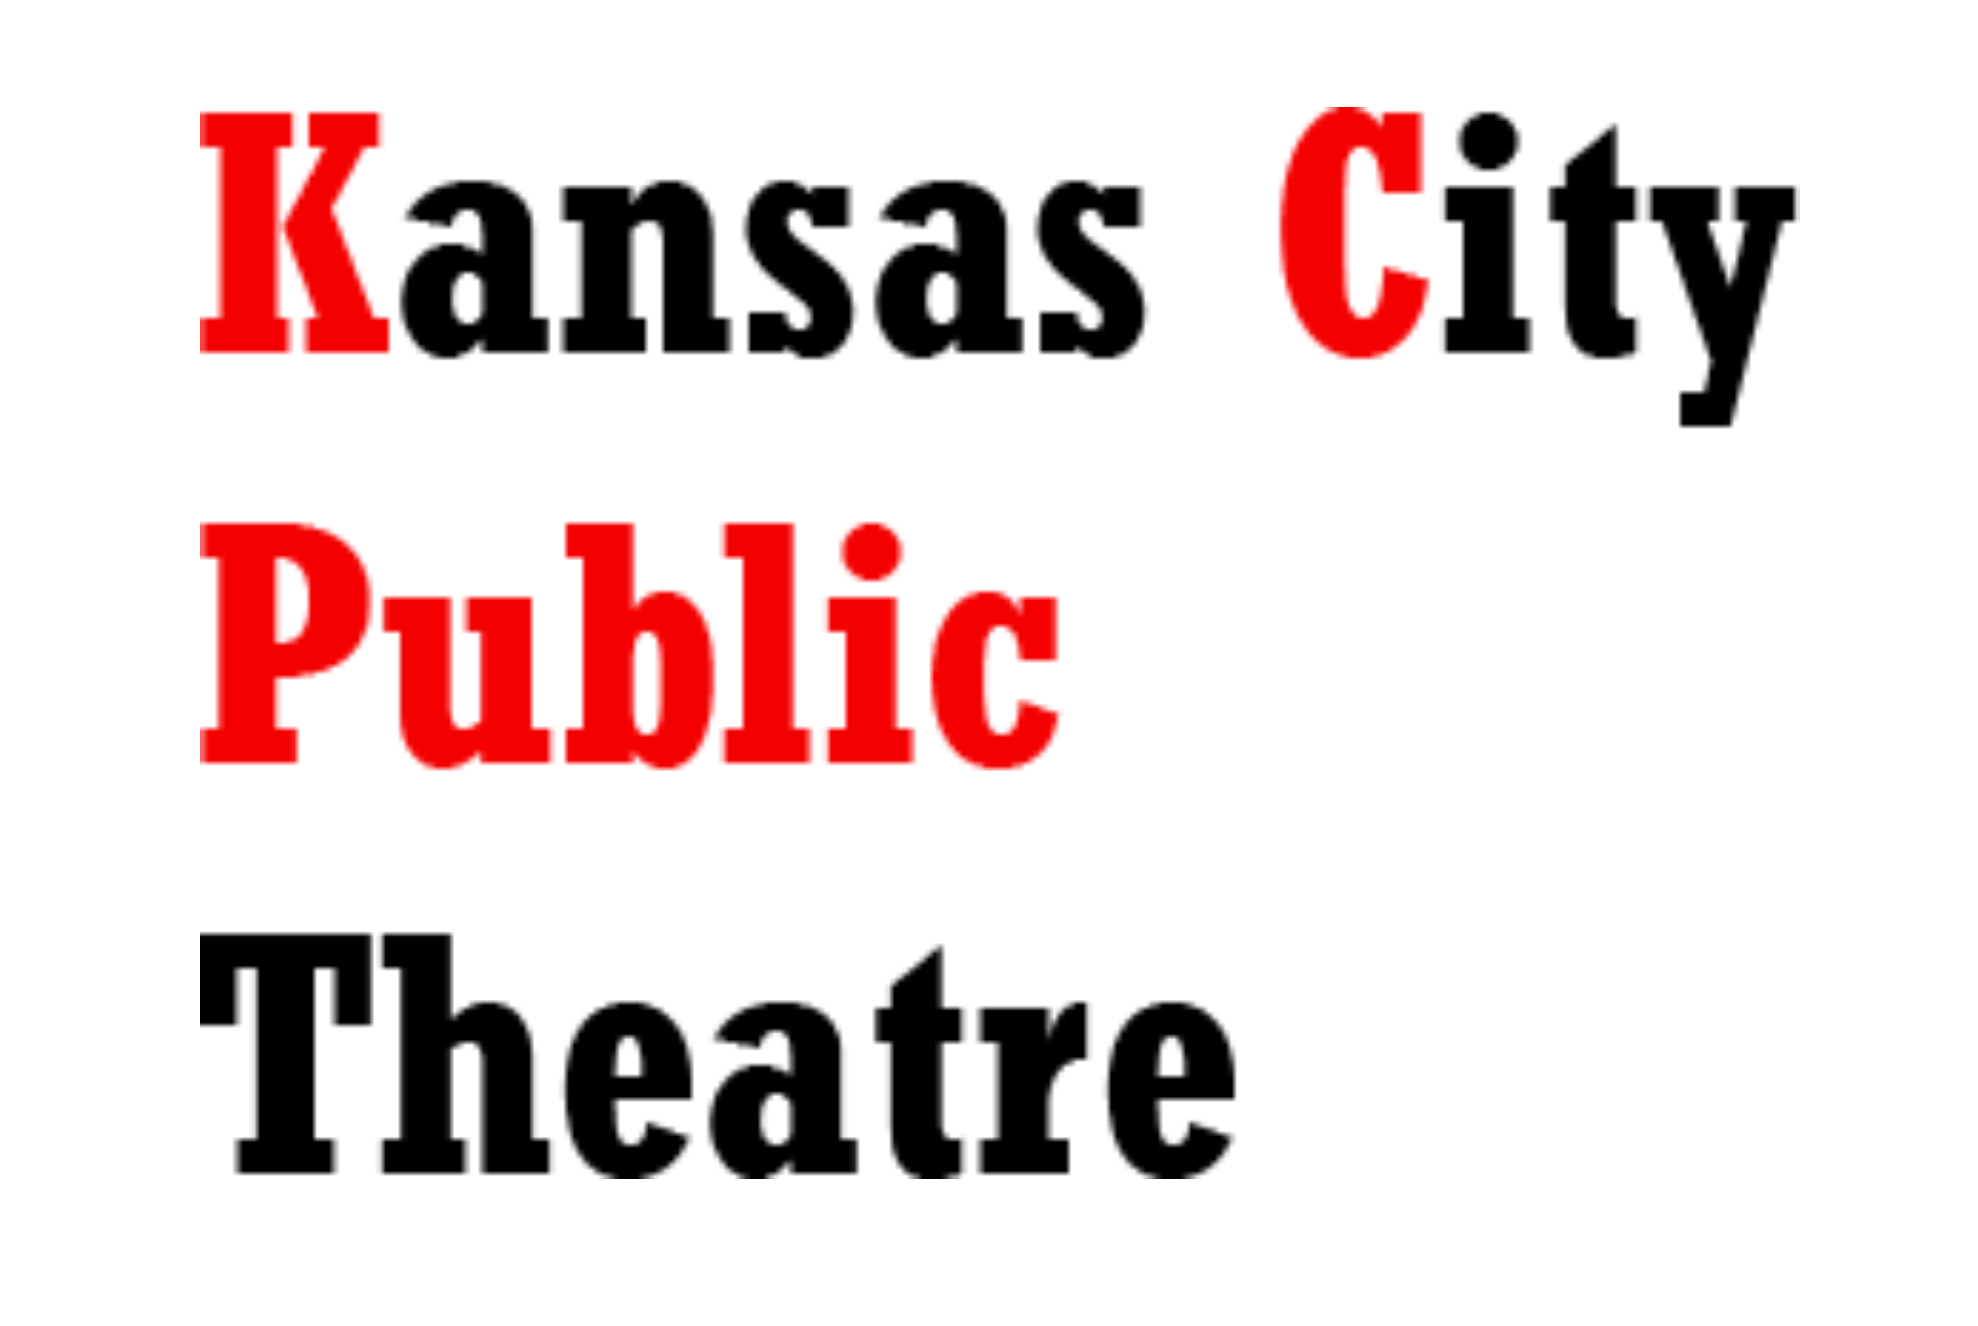 Kansas City Public Theatre